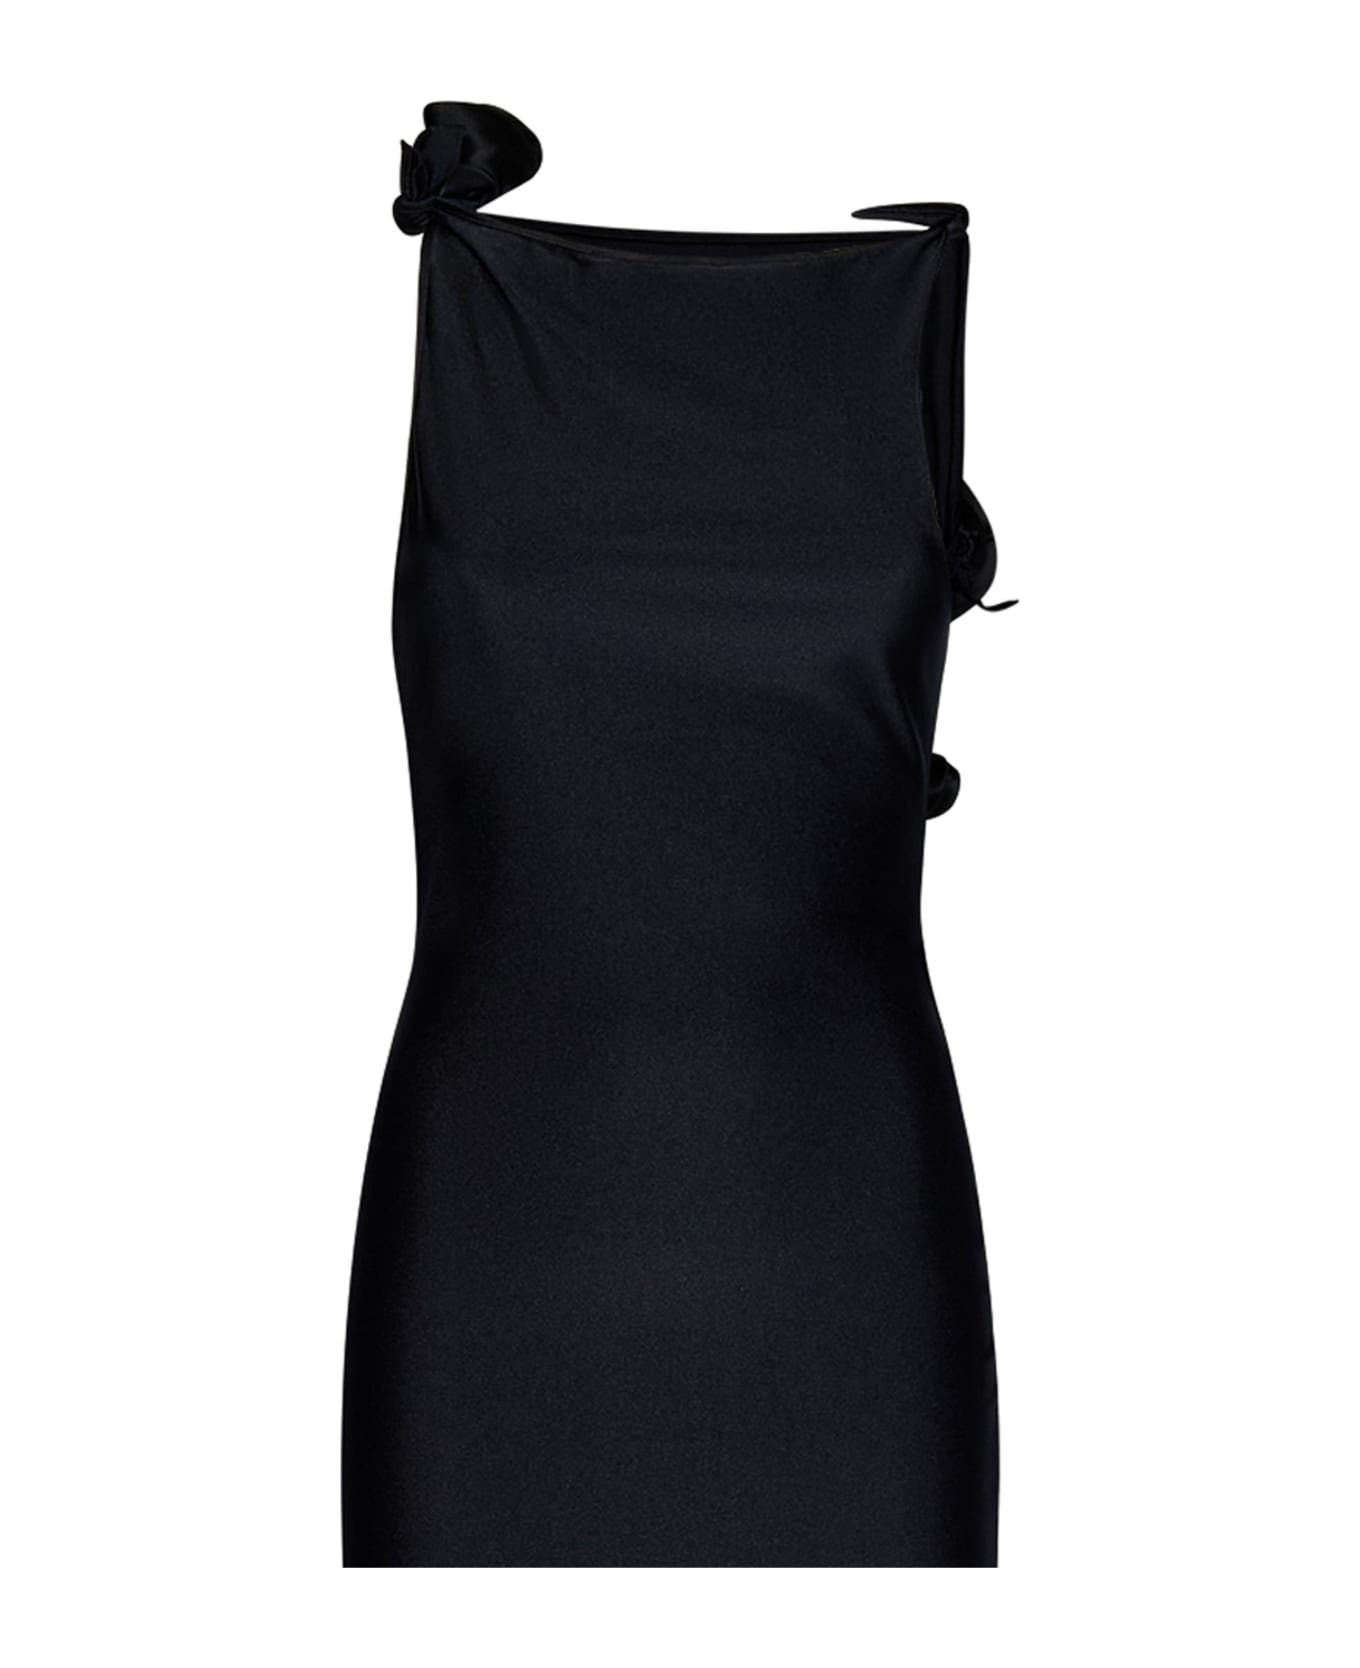 Coperni Long Dress - Black